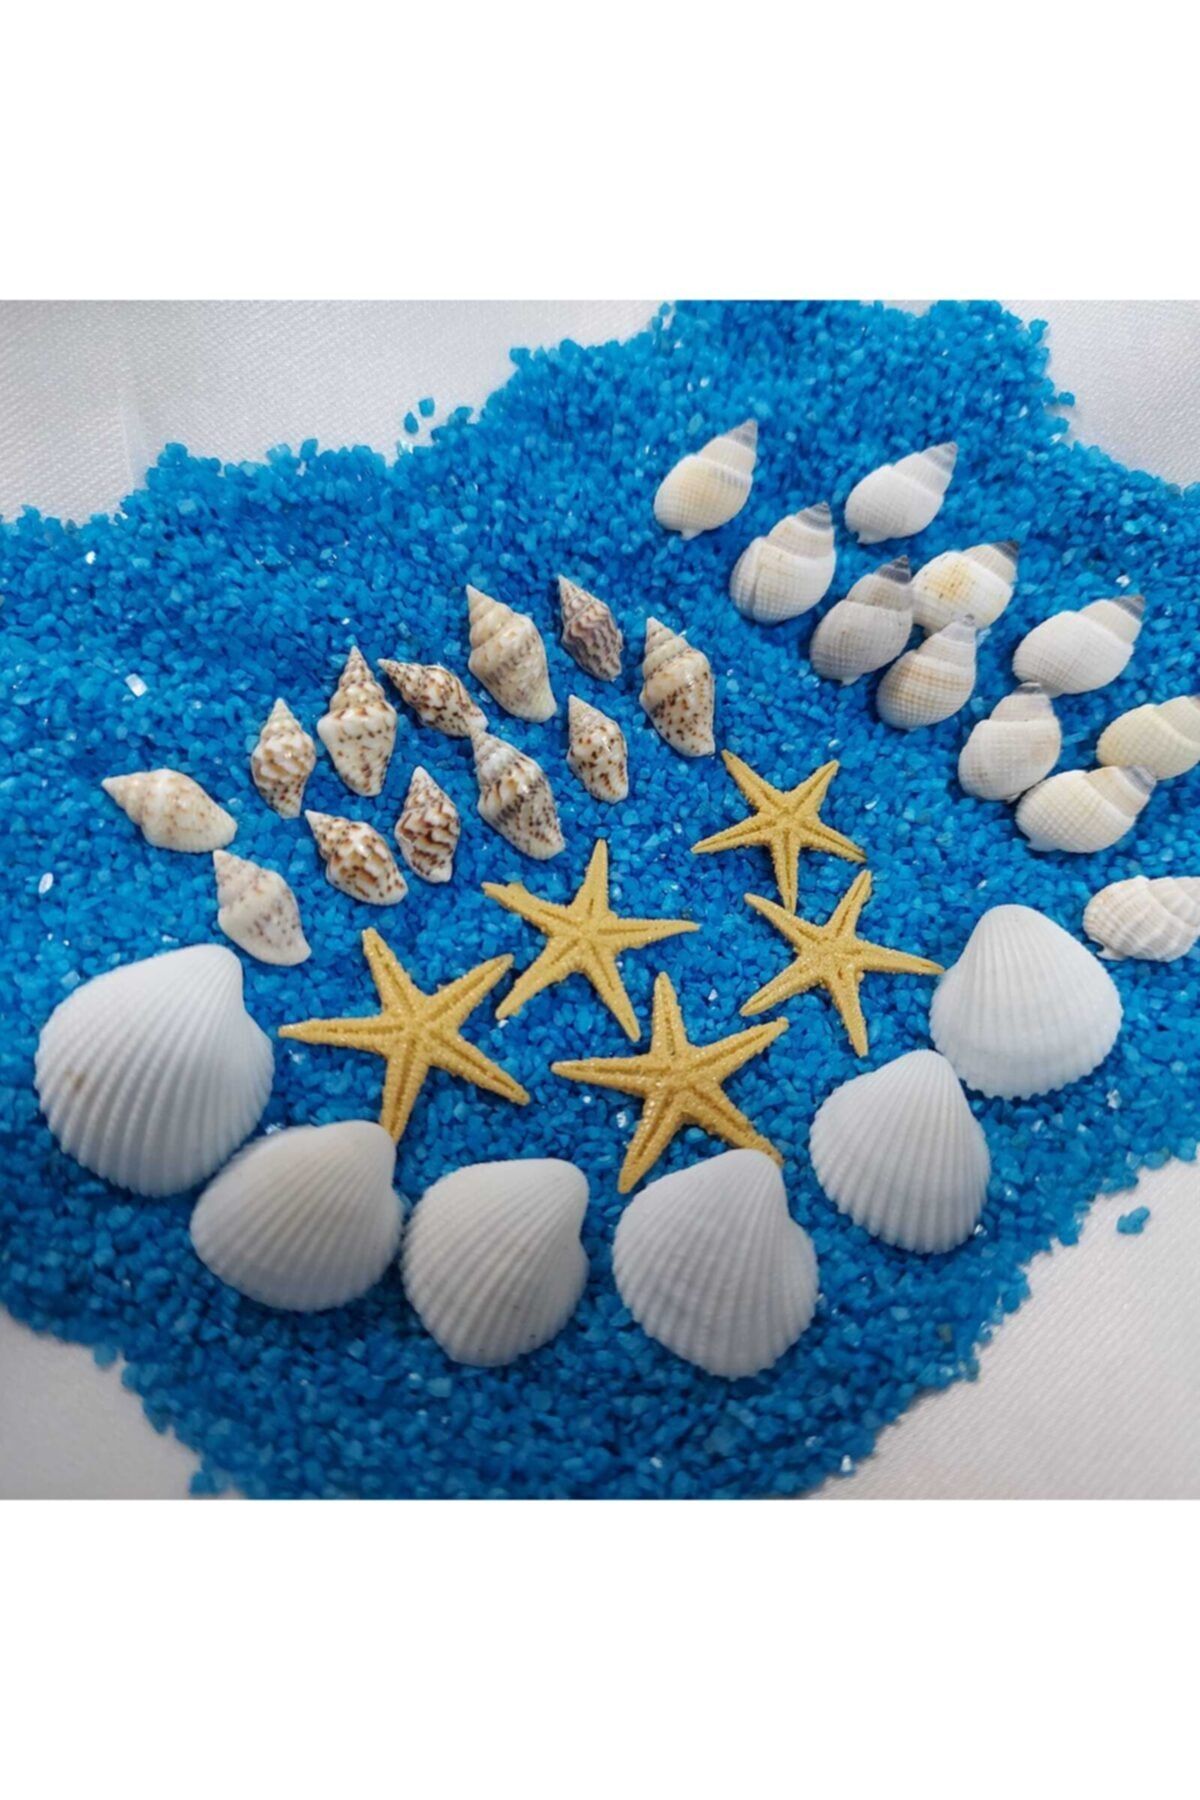 Aker Hediyelik Dekoratif Deniz Kabuğu 1kg Deniz Kabukları Silis Kabuk 07mm-2,5cm+ 1kg Teraryum Mavi Kum+yıldız